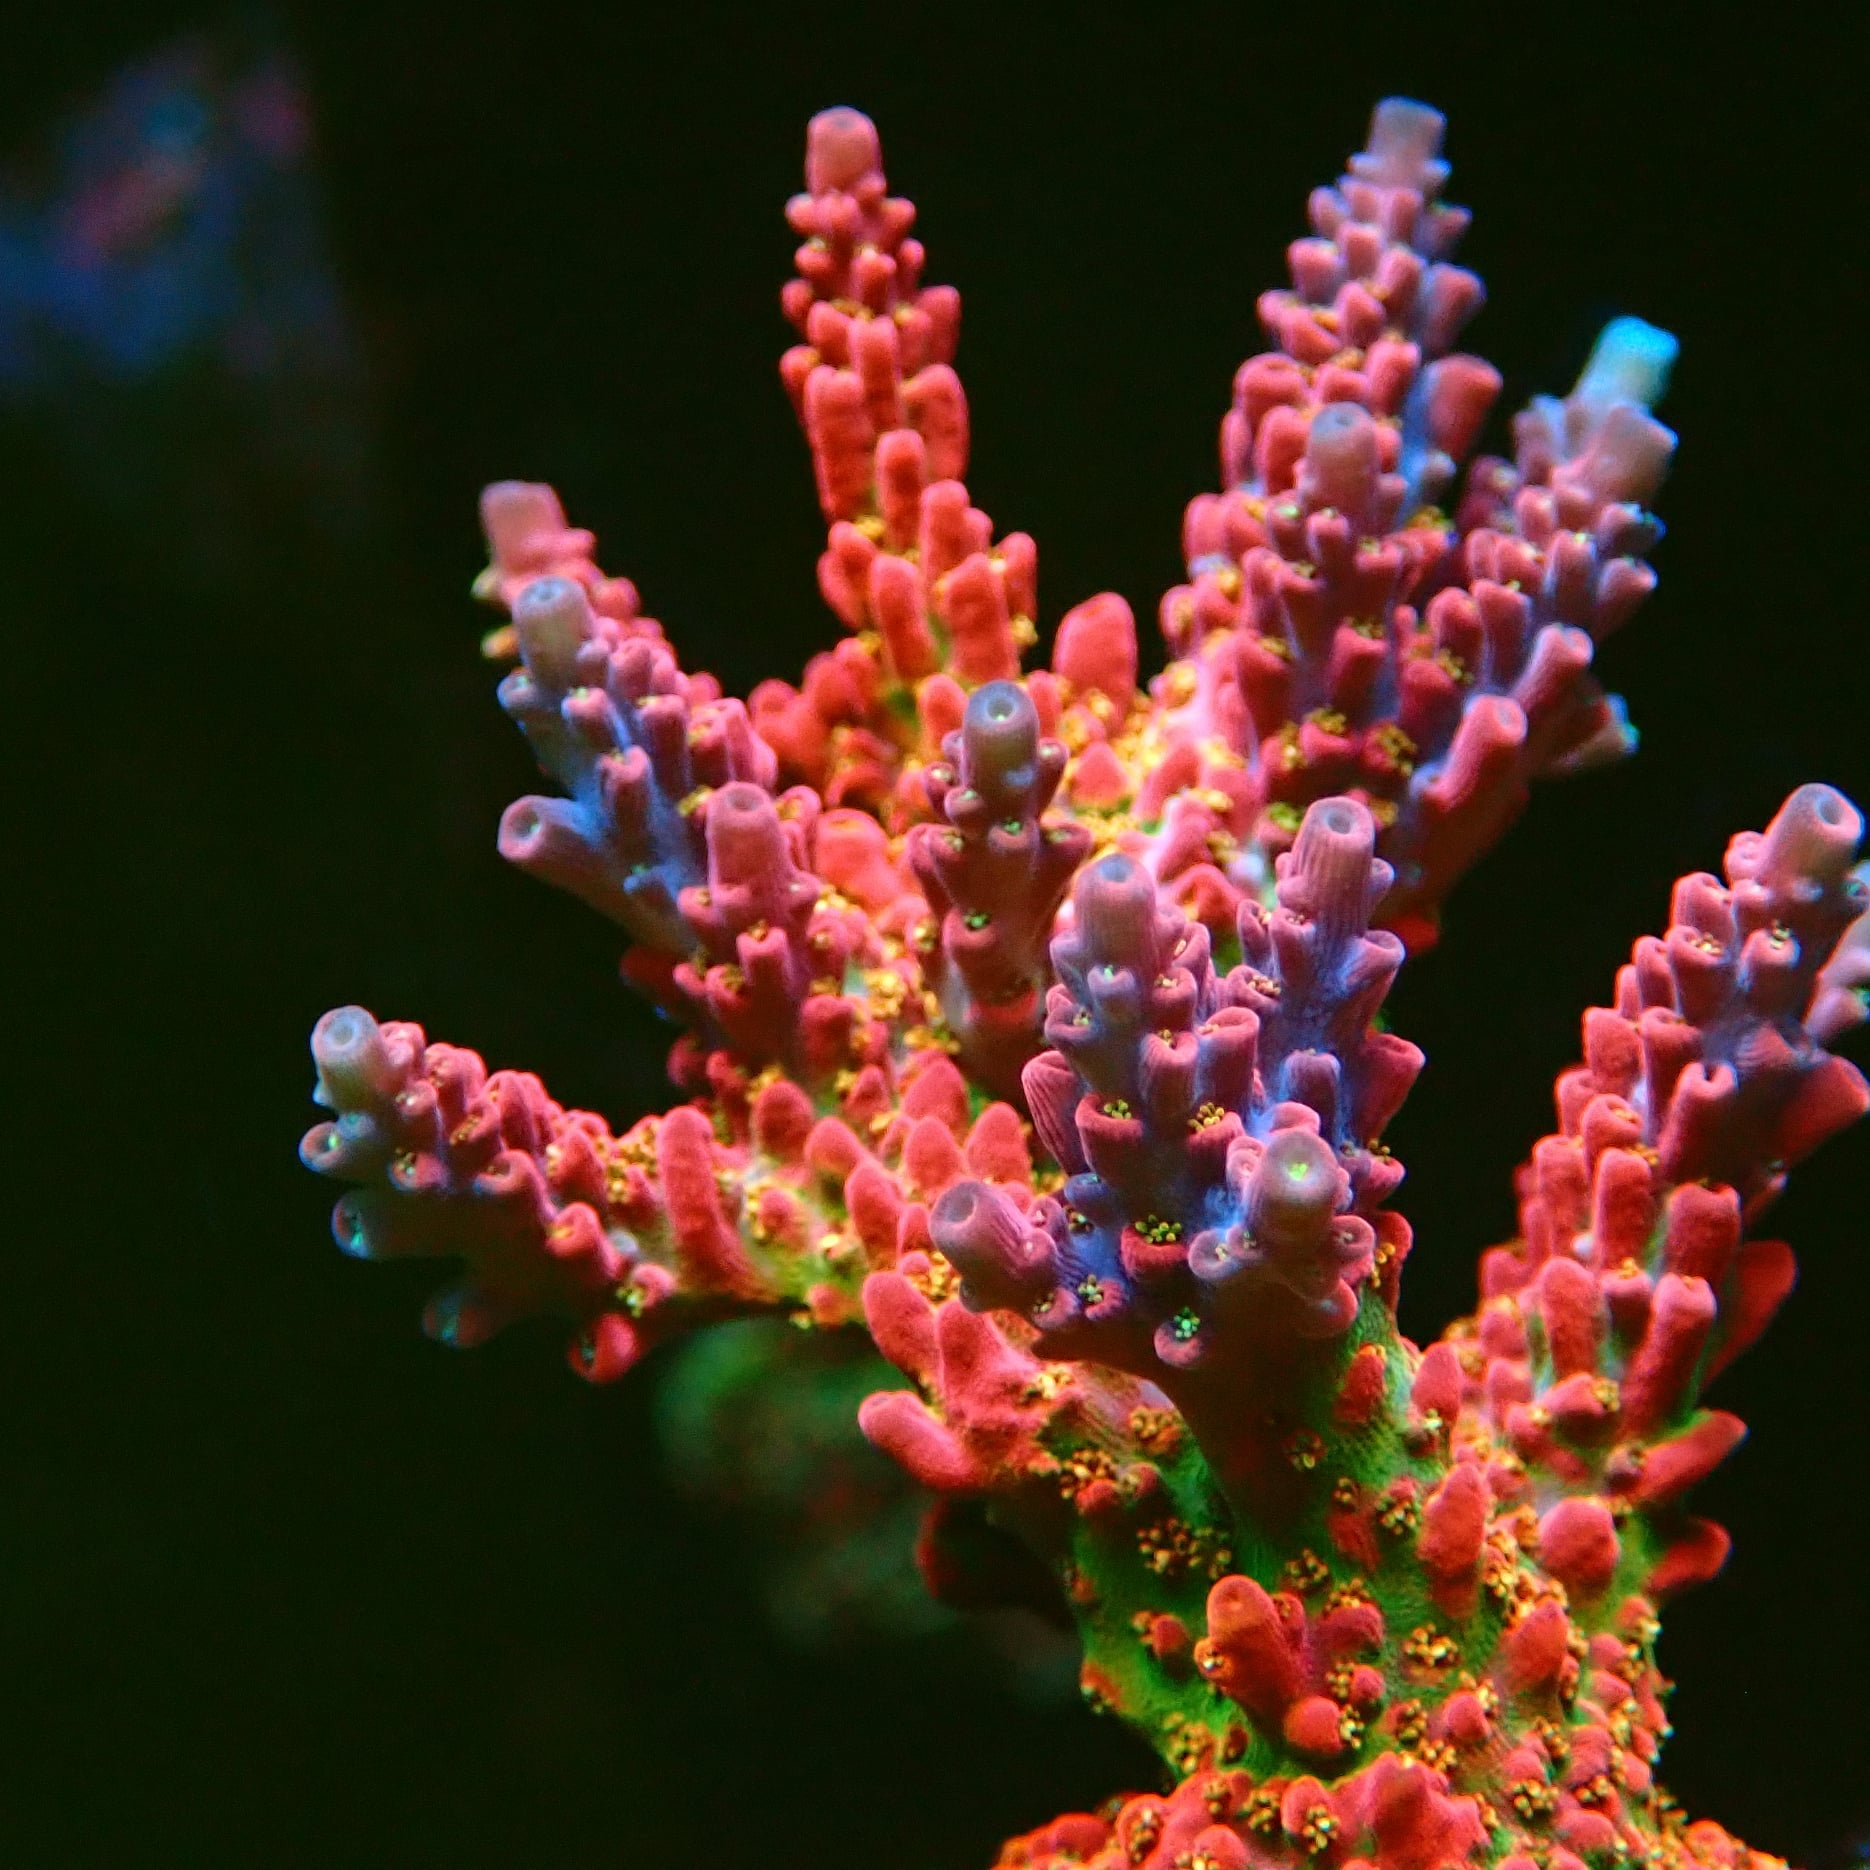 Acropora corals